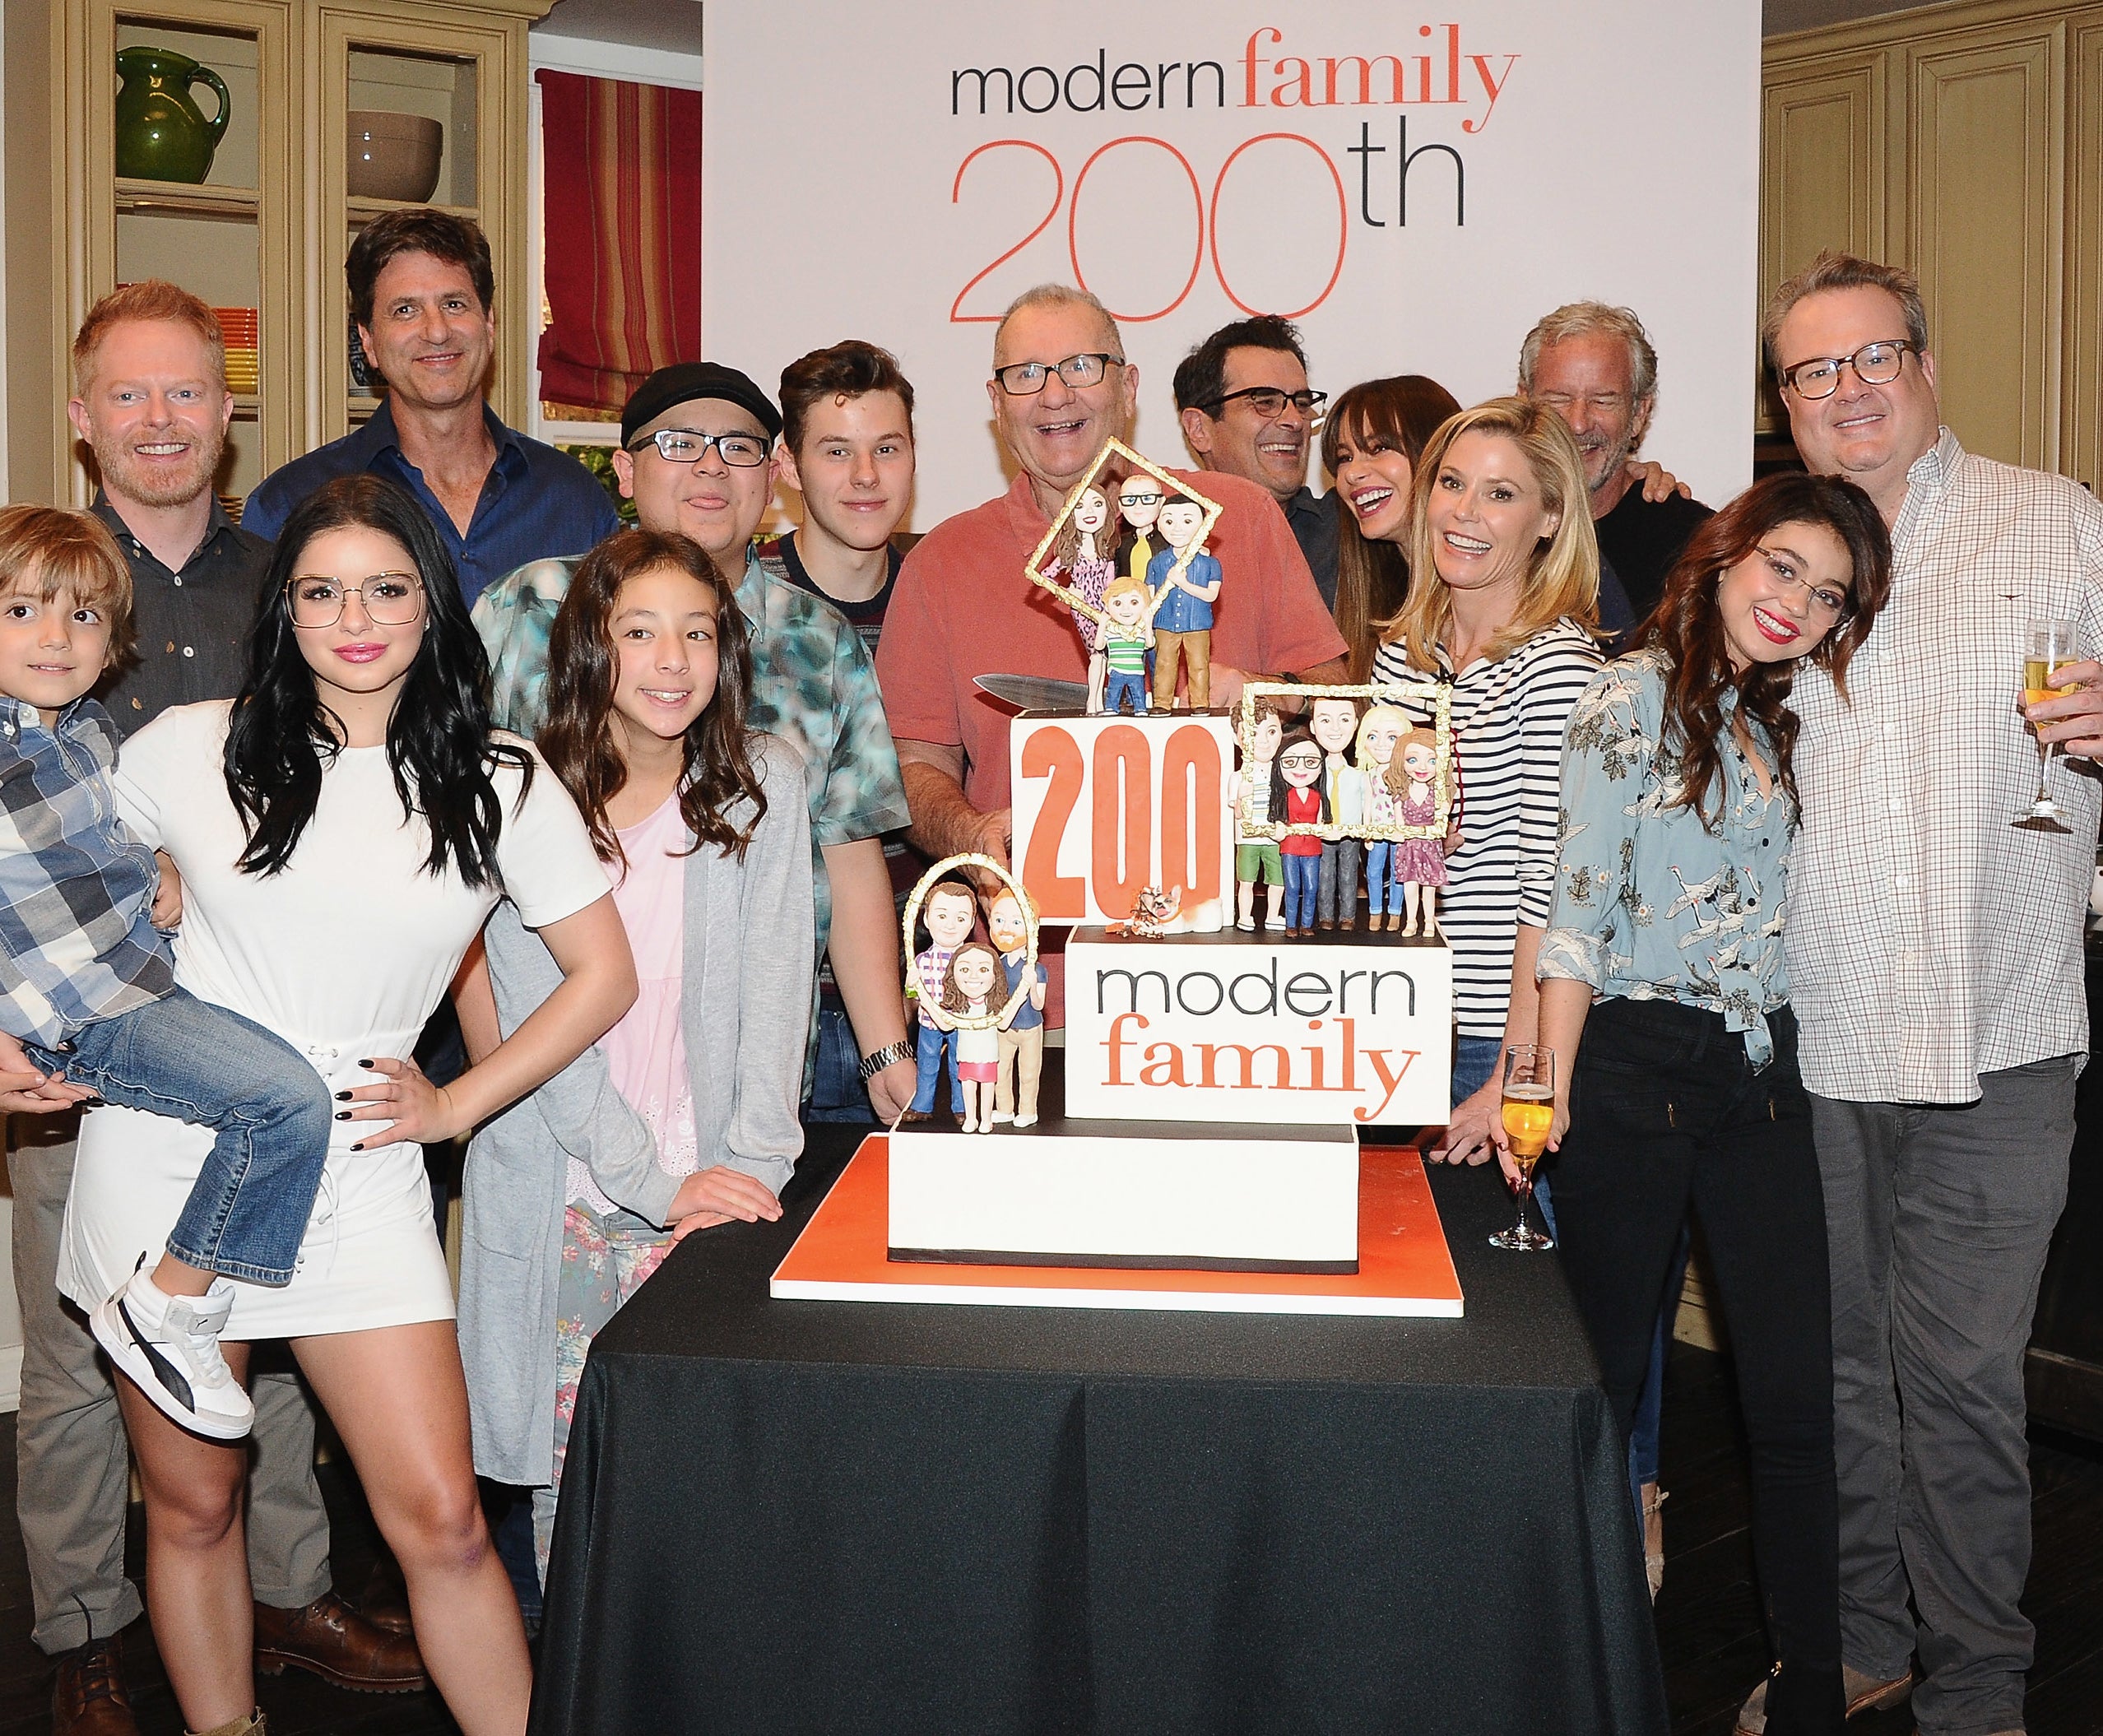 Modern Family' cast reunion photos: Sofia Vergara hosts